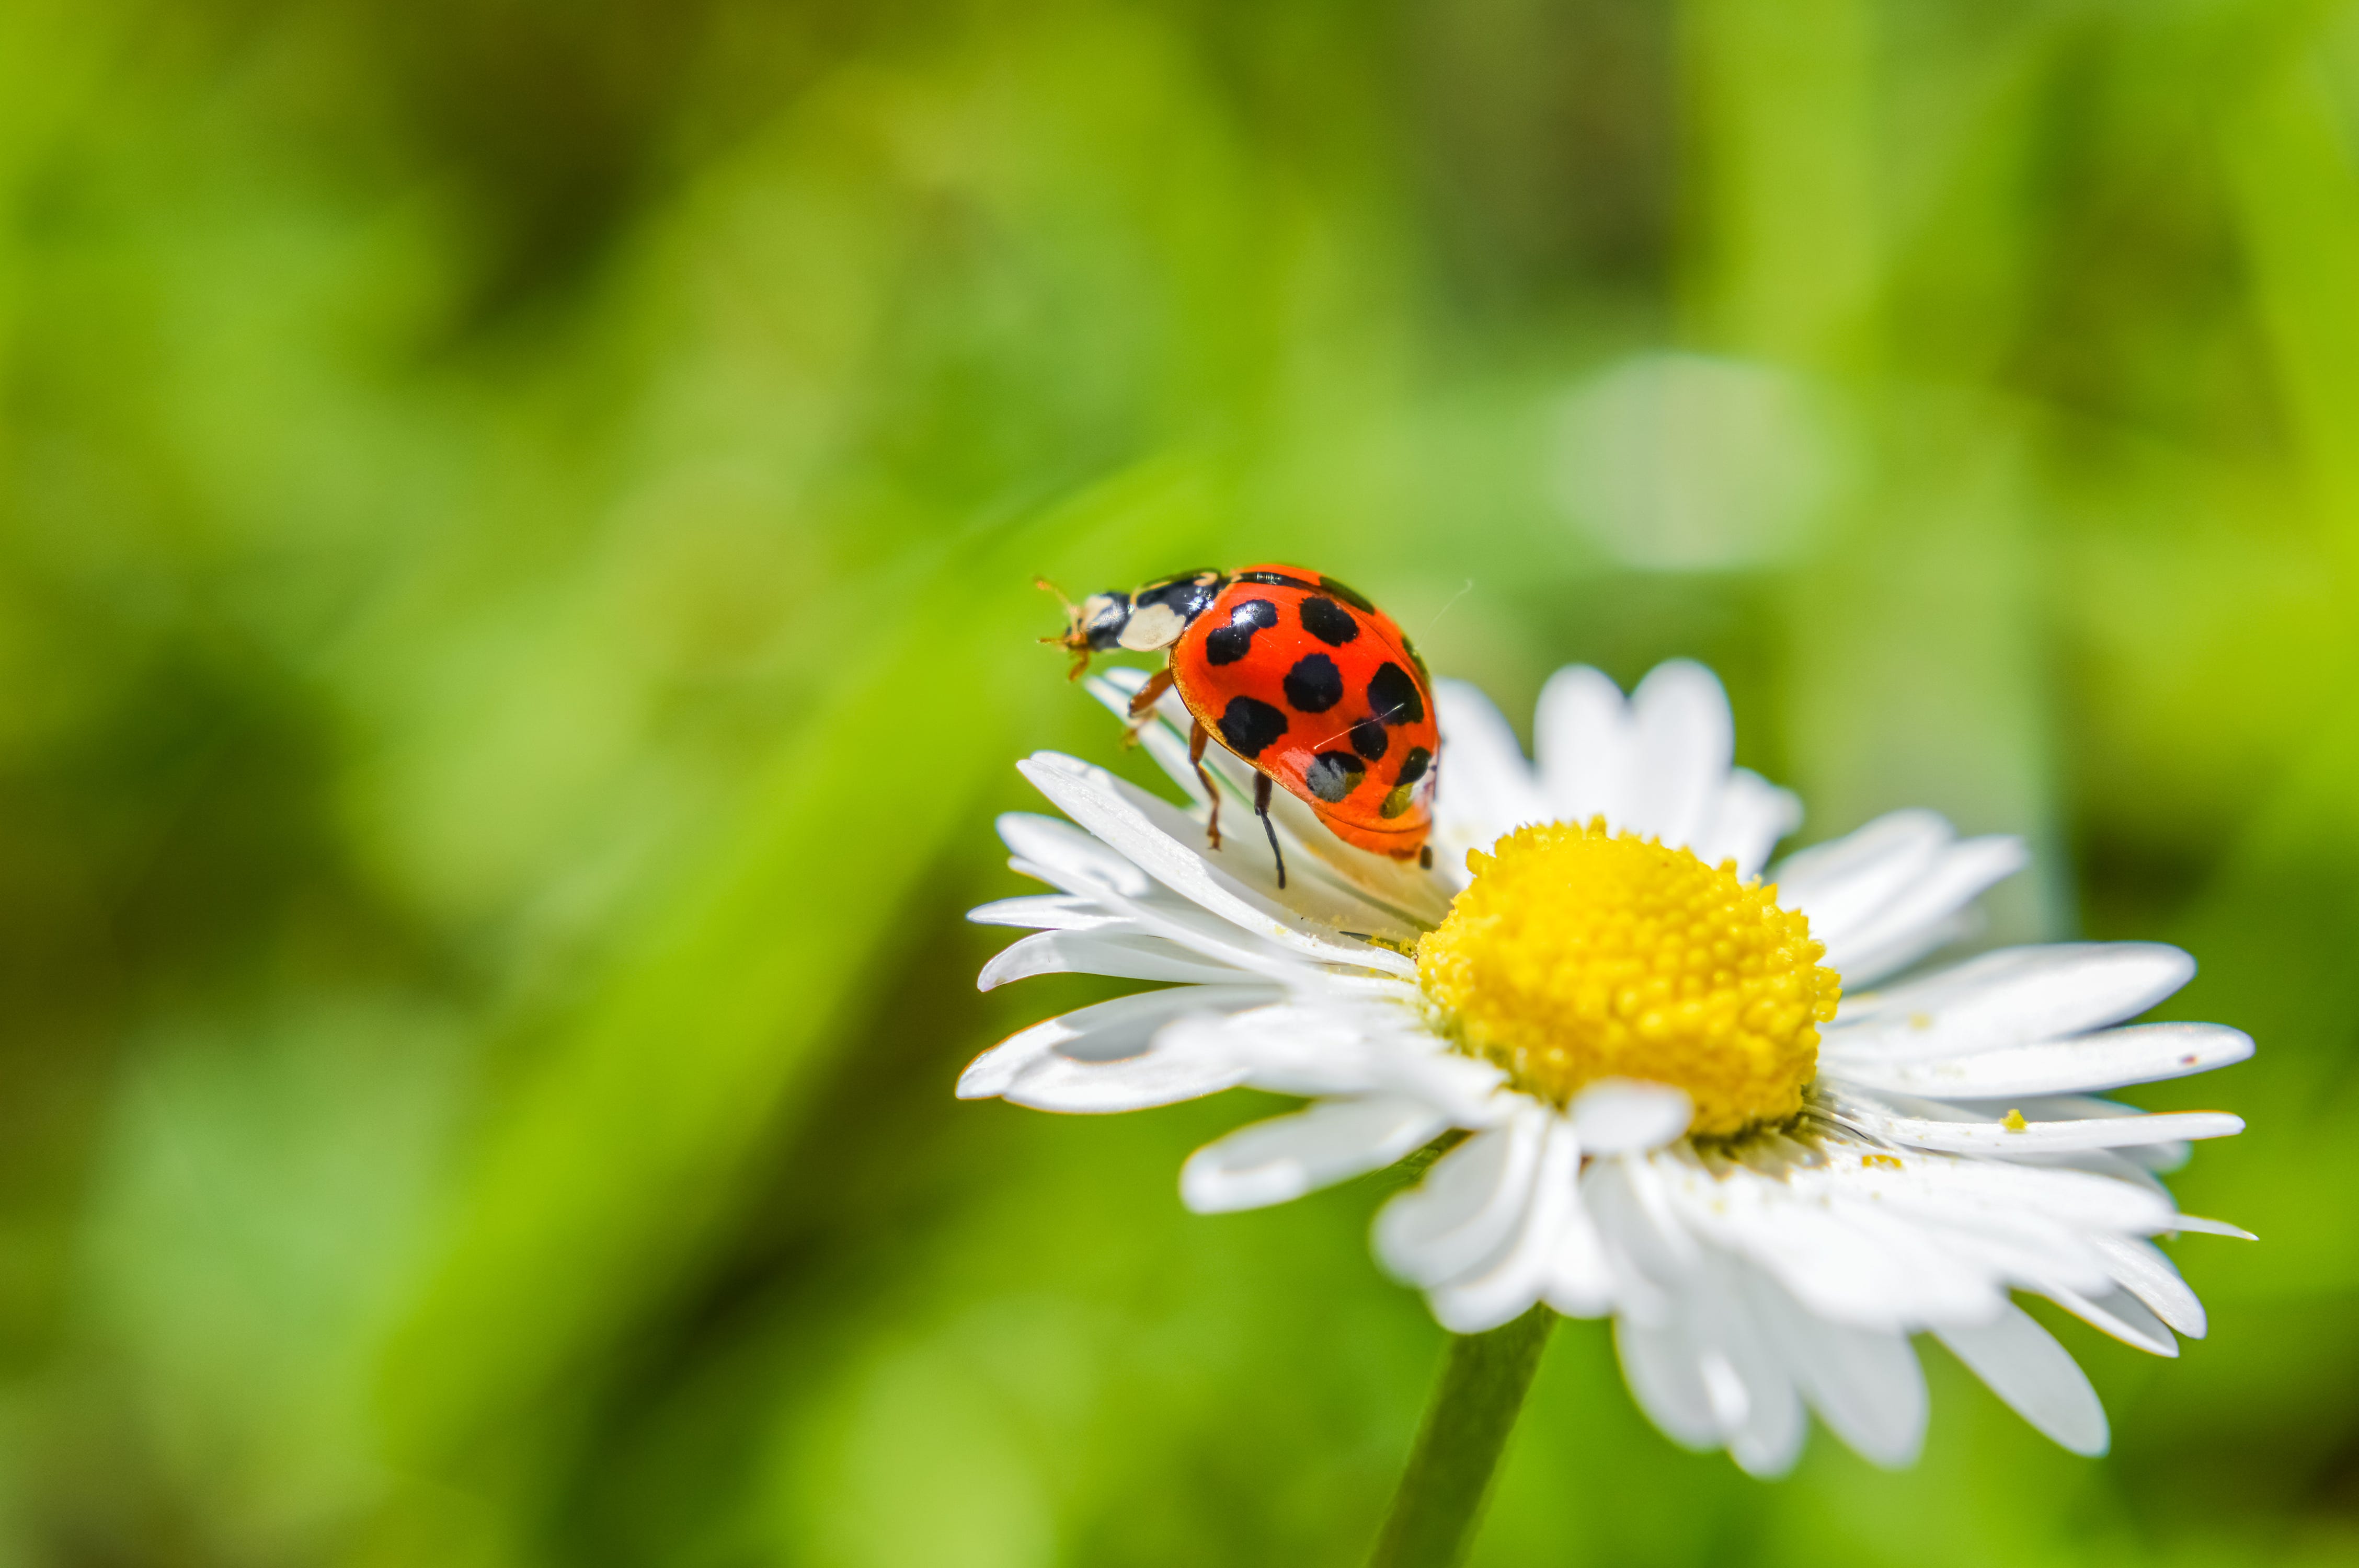 A ladybug on a daisy flower.